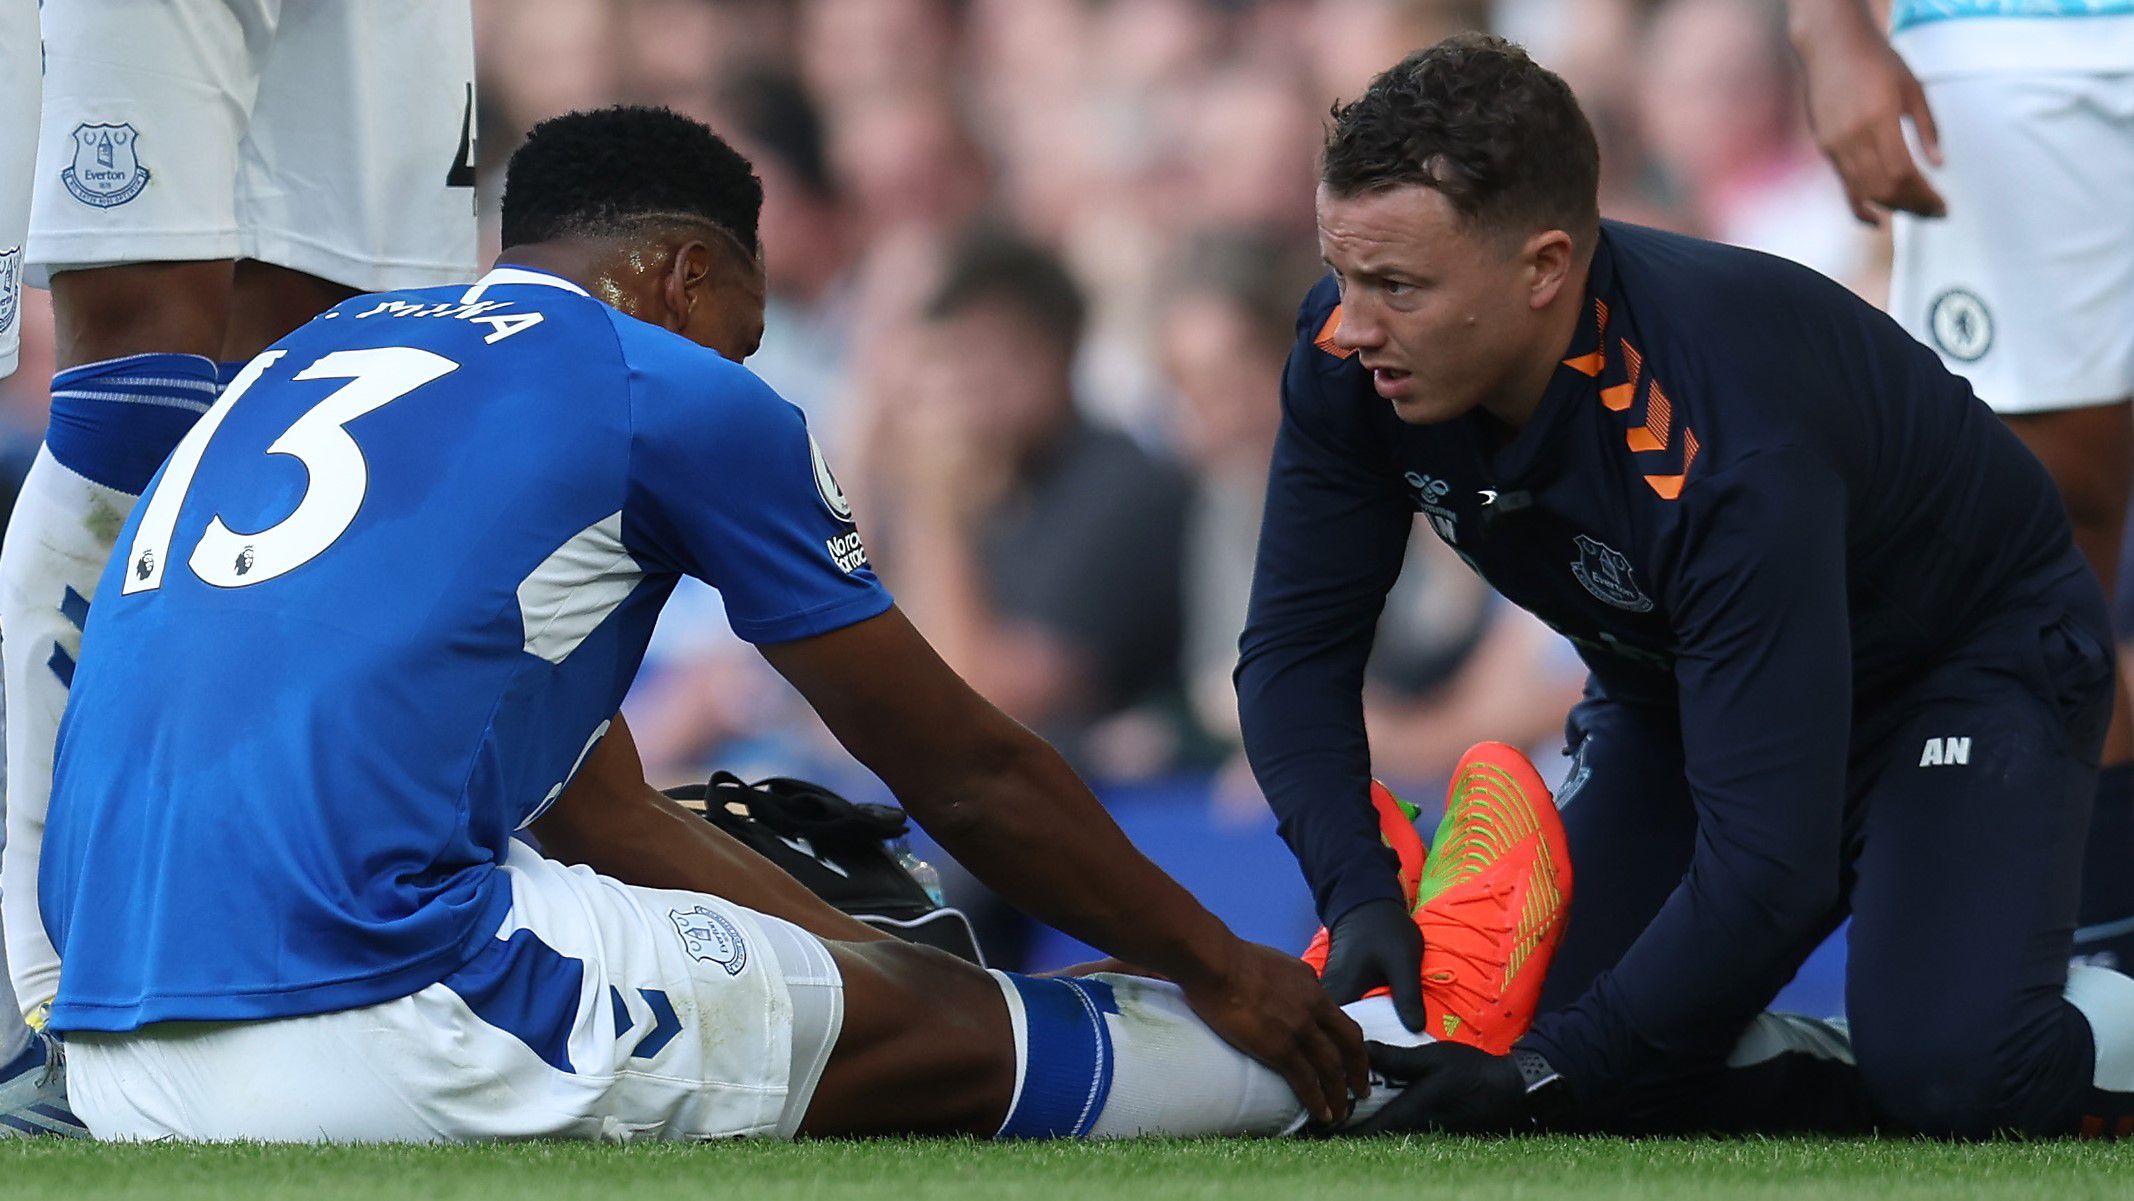 Everton F.C. confirmó que Yerry Mina sufrió una lesión en los ligamentos de su tobillo derecho. Imagen: Getty Images.